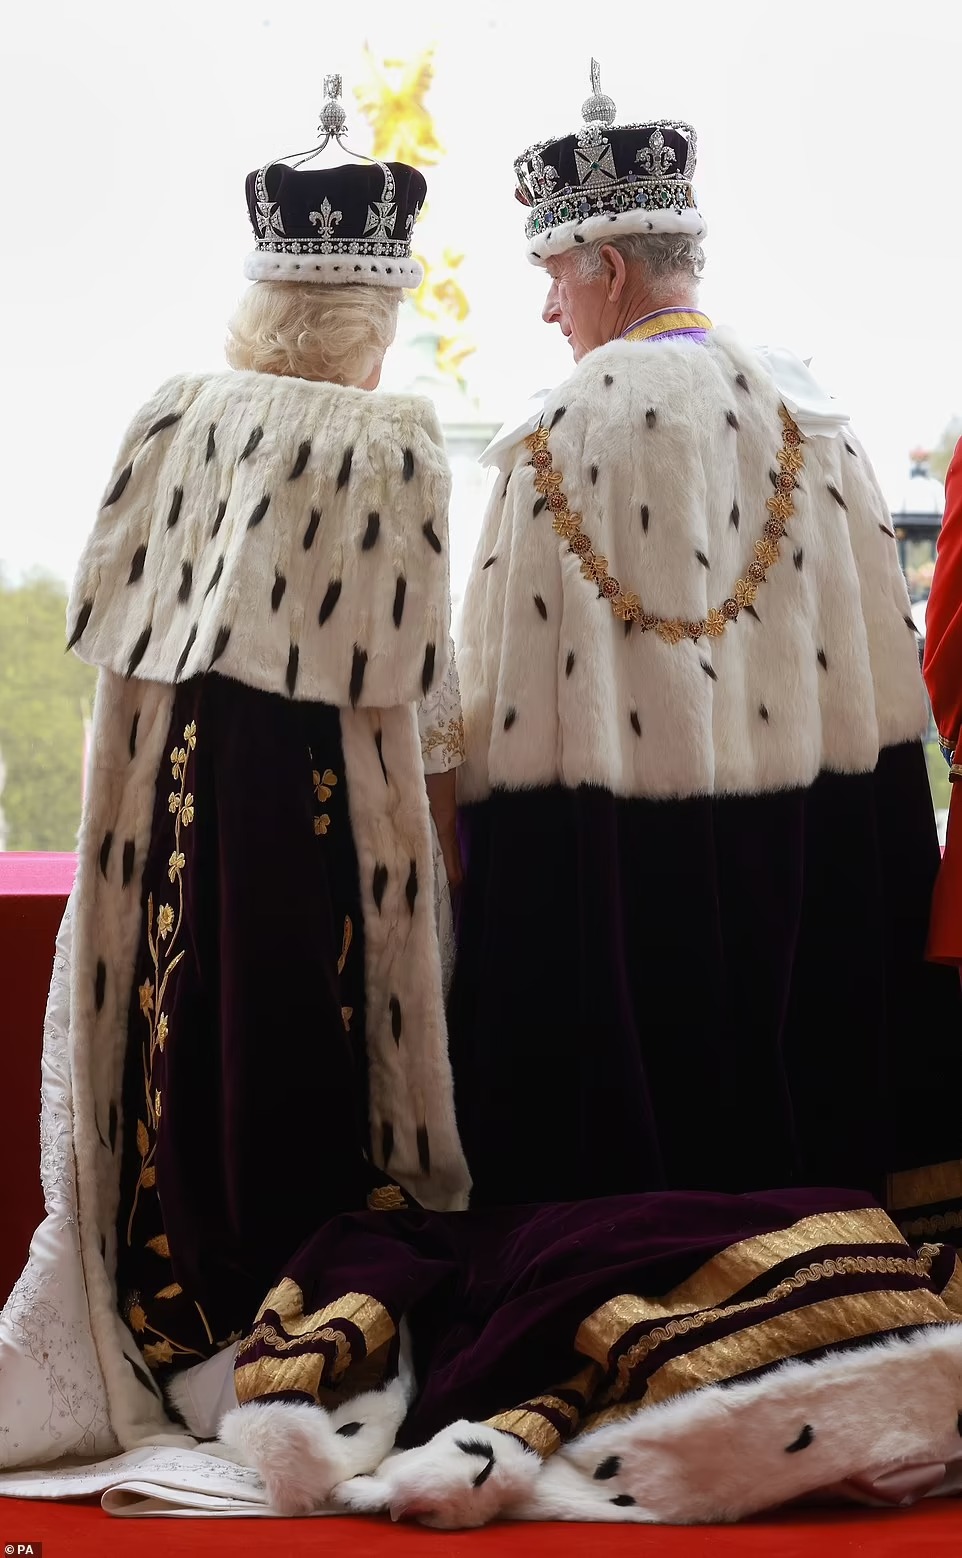 Chùm ảnh hậu trường hiếm hoi của Vua Charles và Vương hậu Camilla trên ban công Cung điện Buckingham, những góc nhìn chưa từng thấy - Ảnh 3.